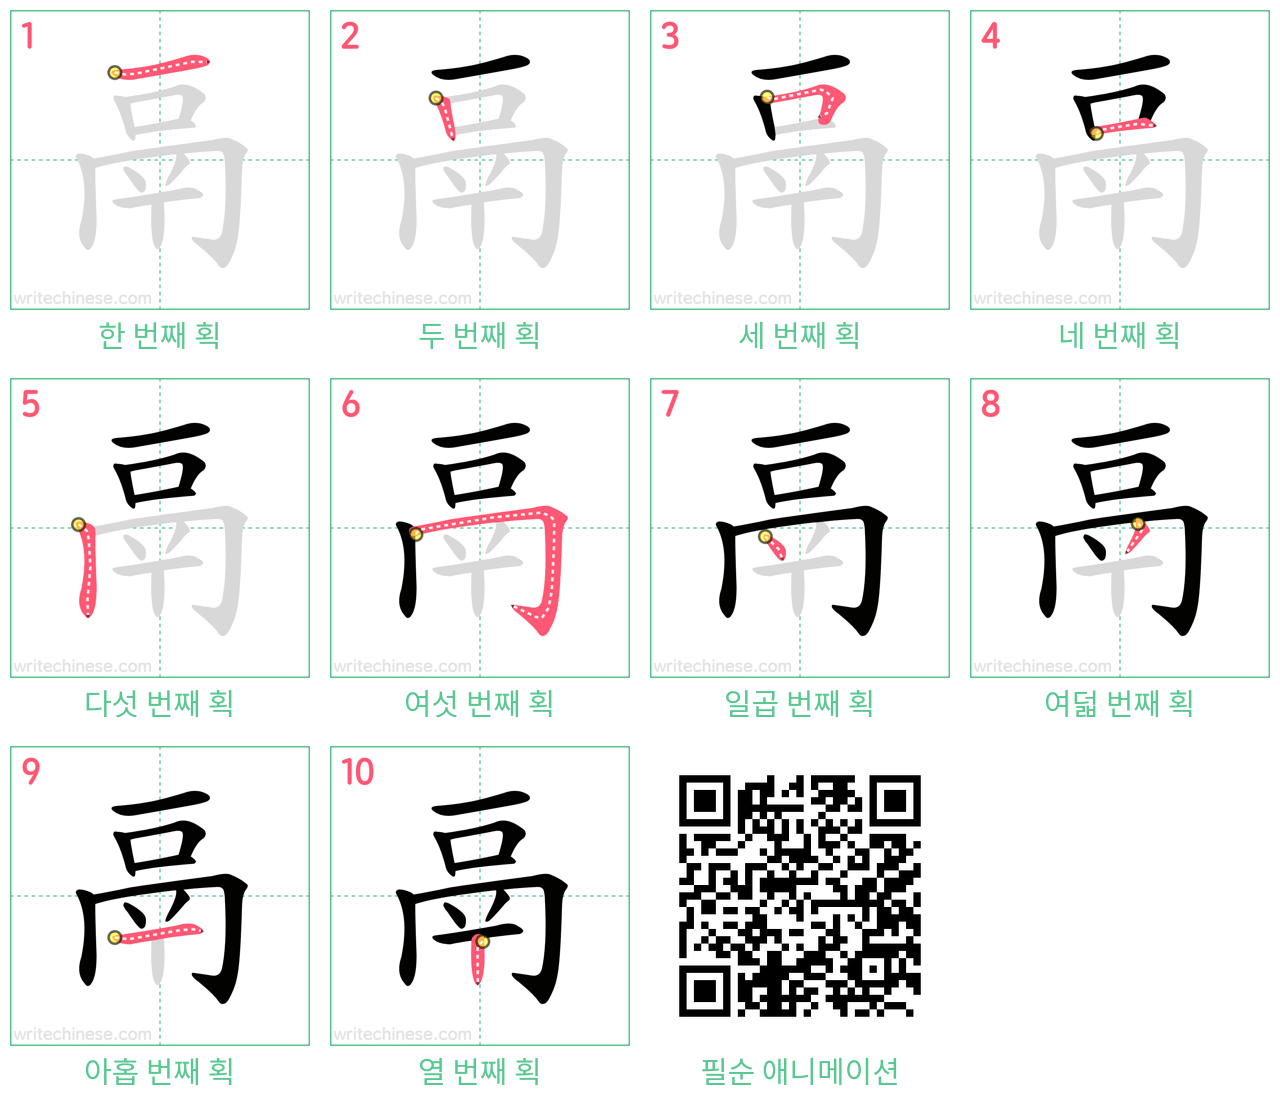 鬲 step-by-step stroke order diagrams